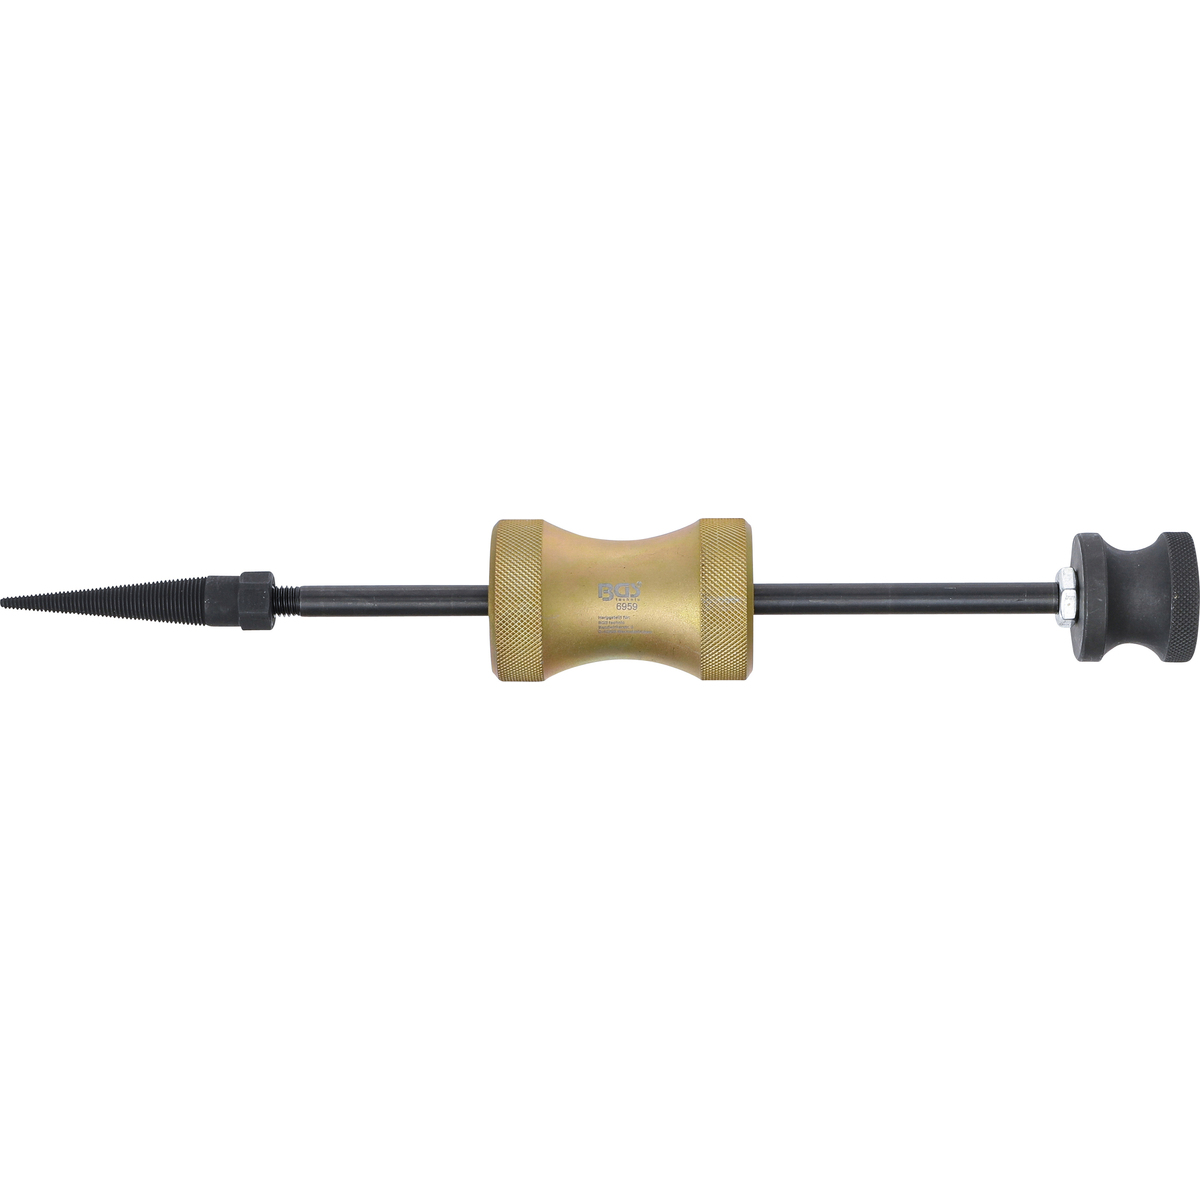 Injektor-Dichtring-Auszieher, 370 mm